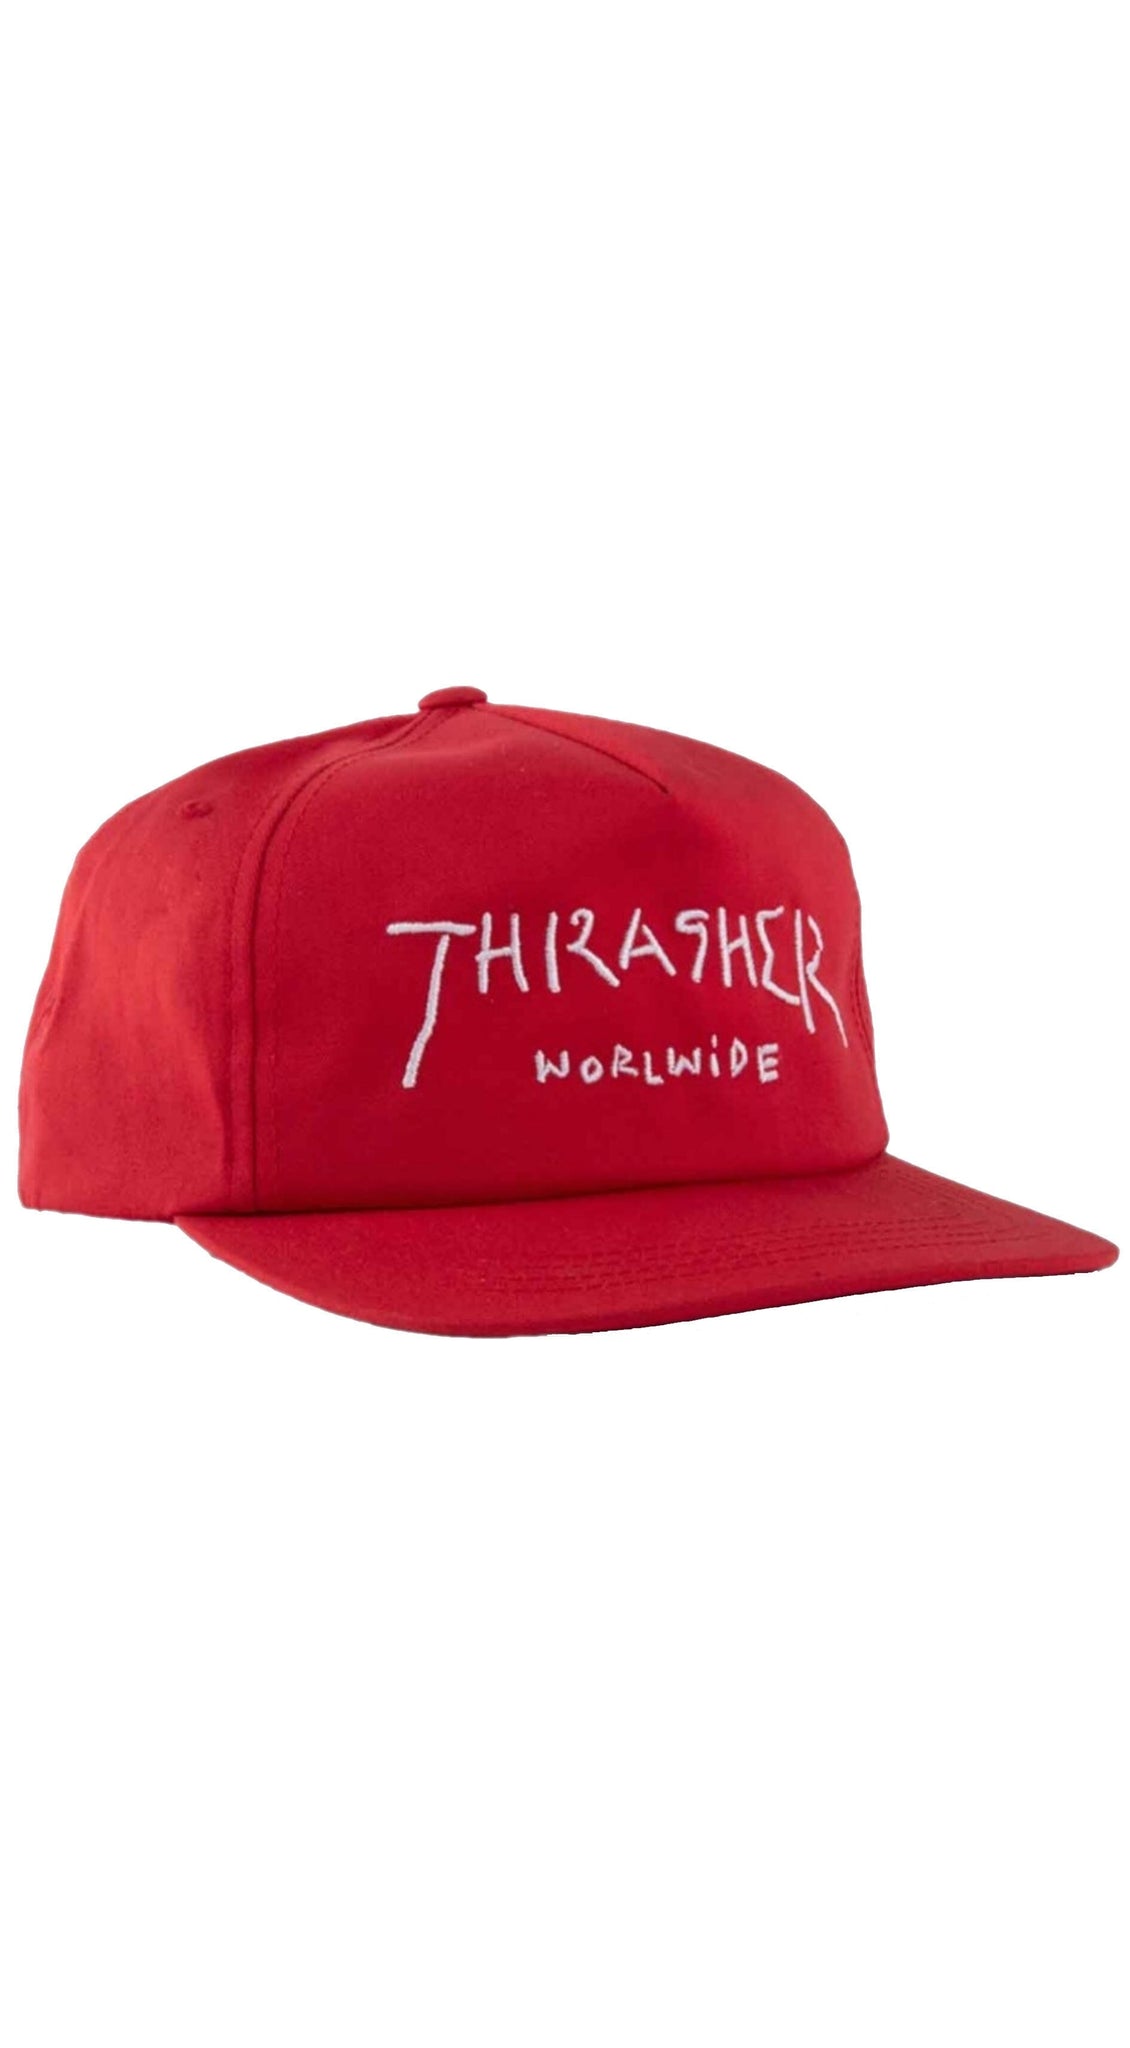 Thrasher Worldwide snapback hat -Gorra Ropa Thrasher Magazine 